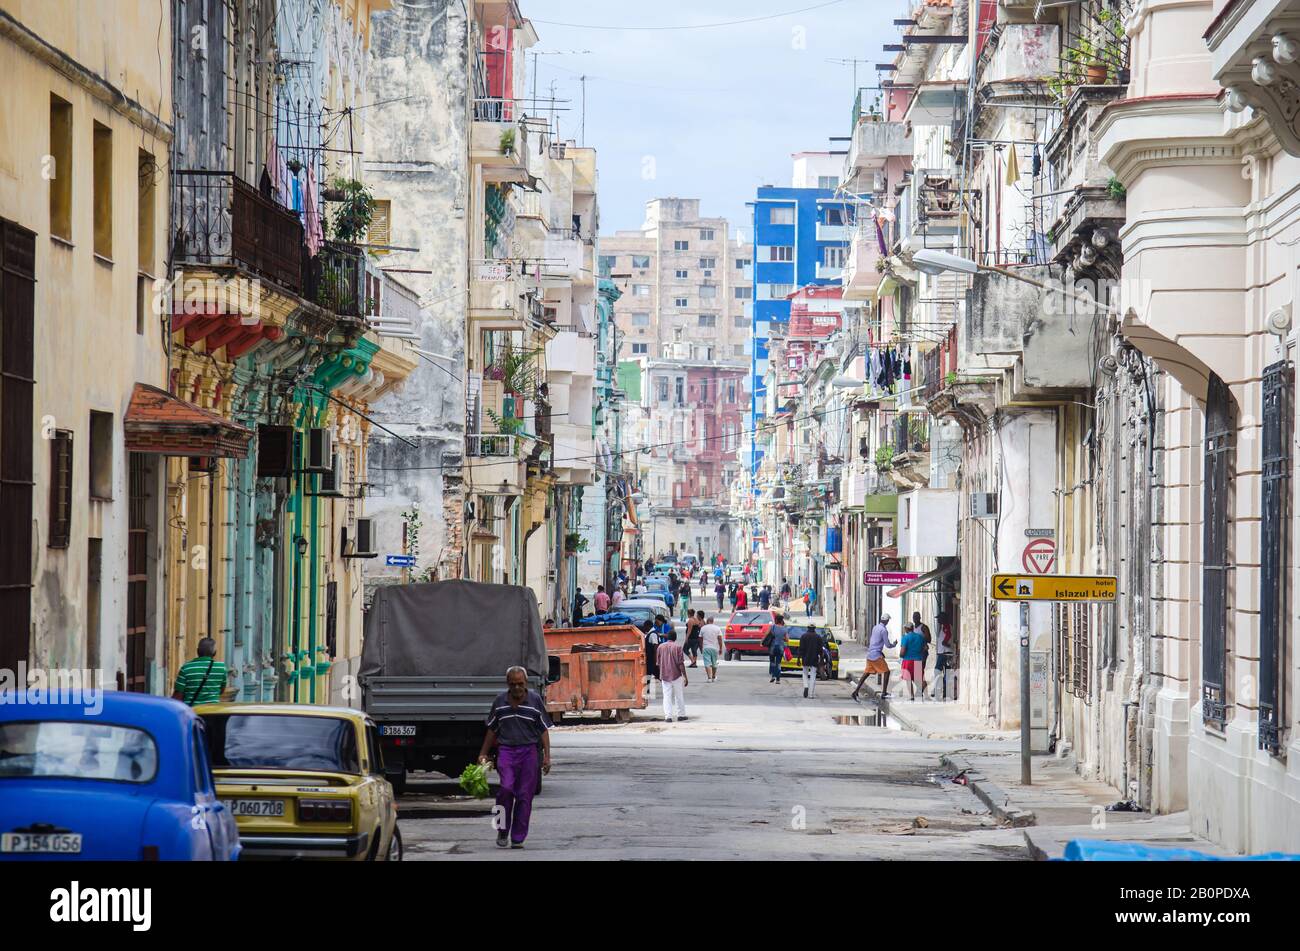 Typical scene in Centro Havana streets Stock Photo